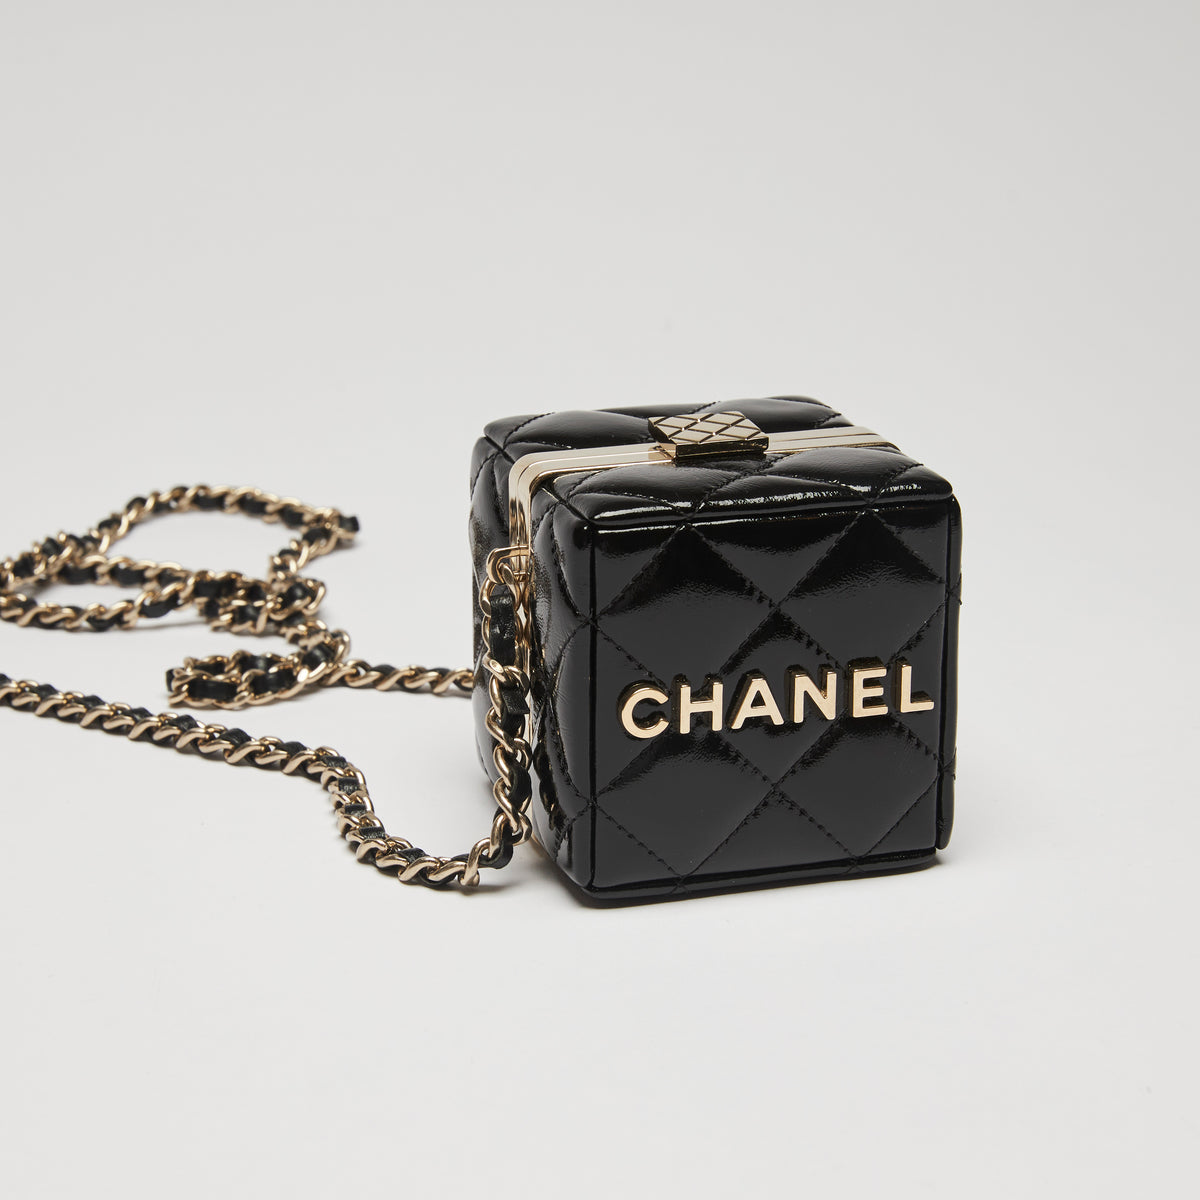 chanel small box bag purse